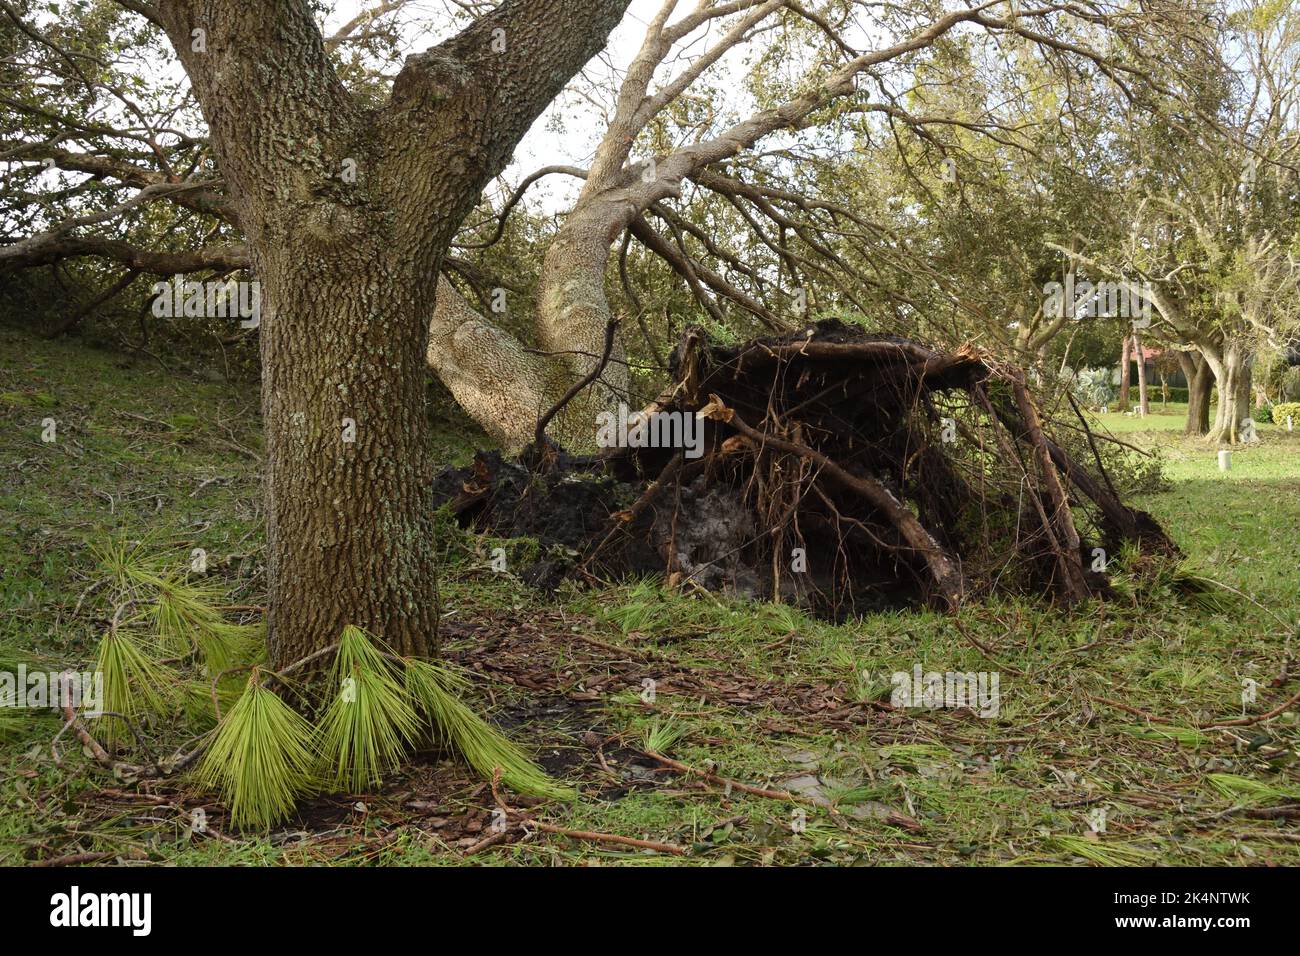 Le conseguenze dell'uragano Ian, categoria 4, che ha colpito la Florida sud-occidentale il 28 settembre 2022. Il grande albero di quercia fu sradicato dalla tempesta di vento. Foto Stock